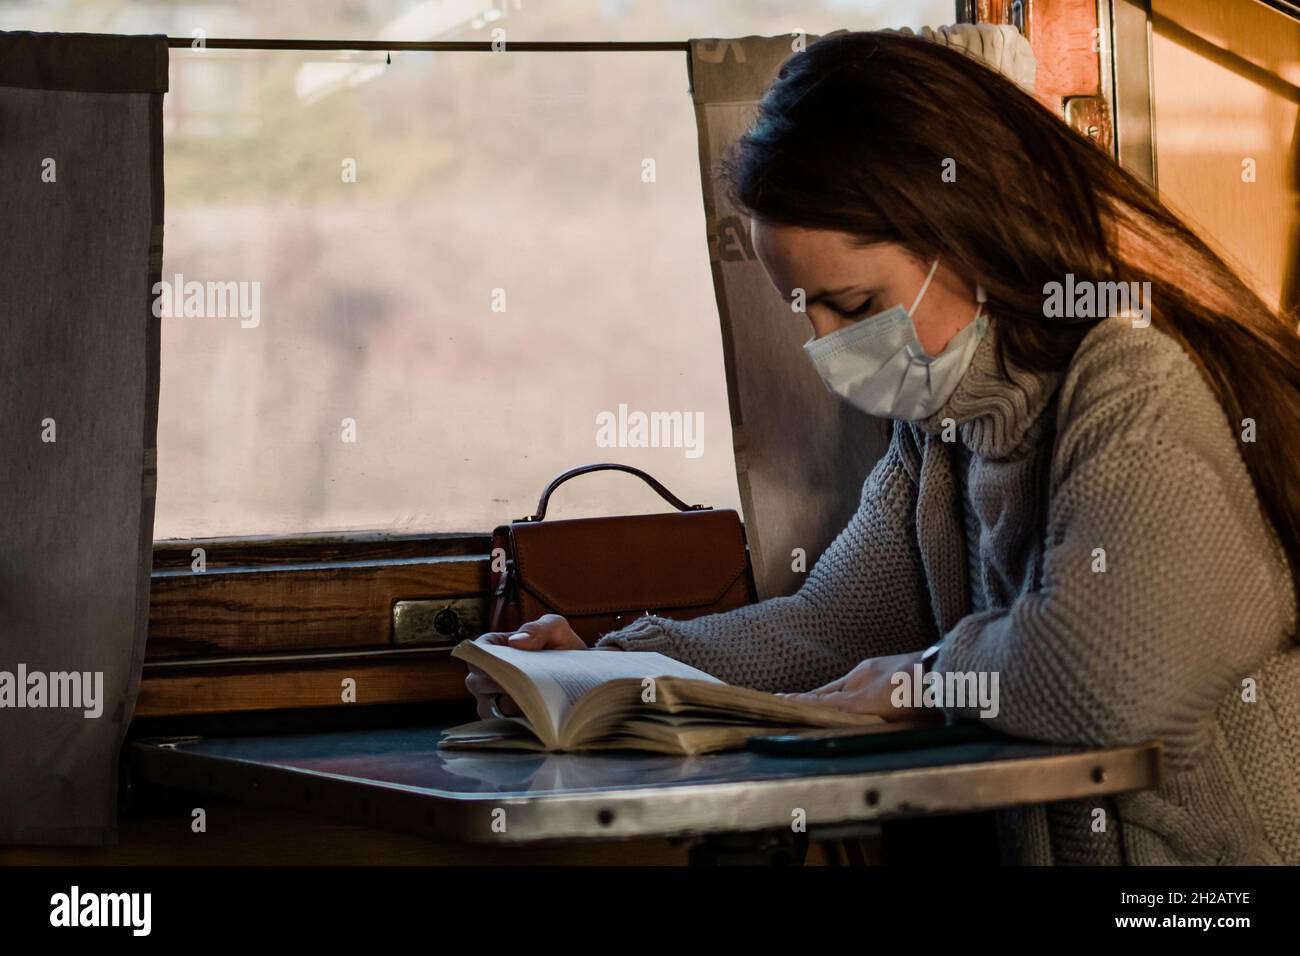 Eine junge Frau in einer medizinischen Maske reist während einer Coronavirus-Pandemie mit dem Zug. Das Mädchen liest ein Buch und hört Musik im Zug. T Stockfoto